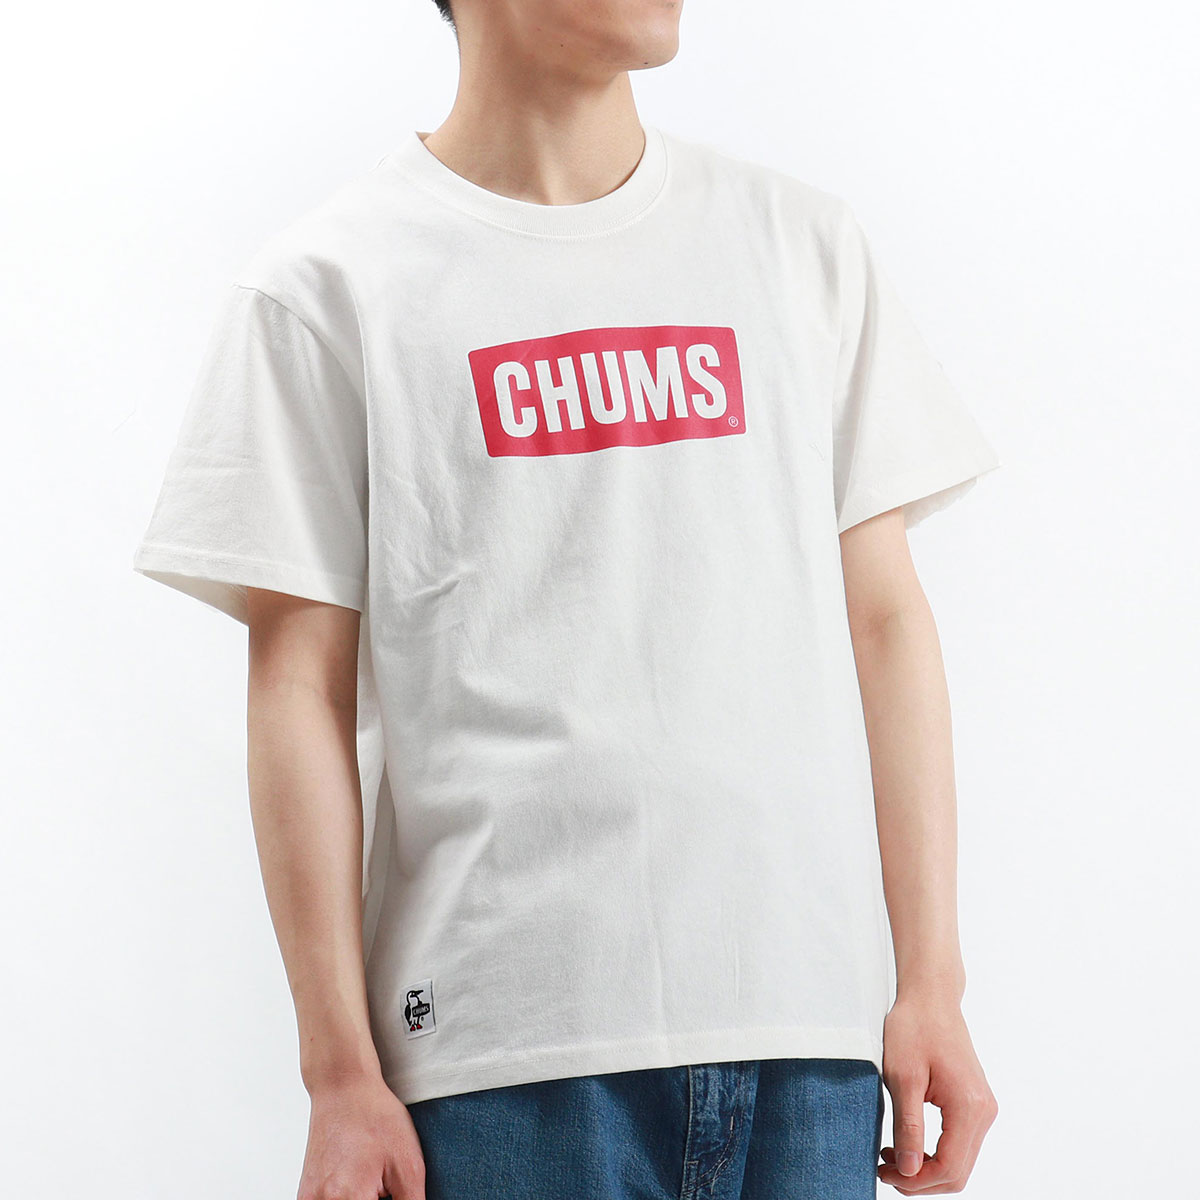 最大27% 12/18迄 日本正規品 チャムス Tシャツ CHUMS チャムス 